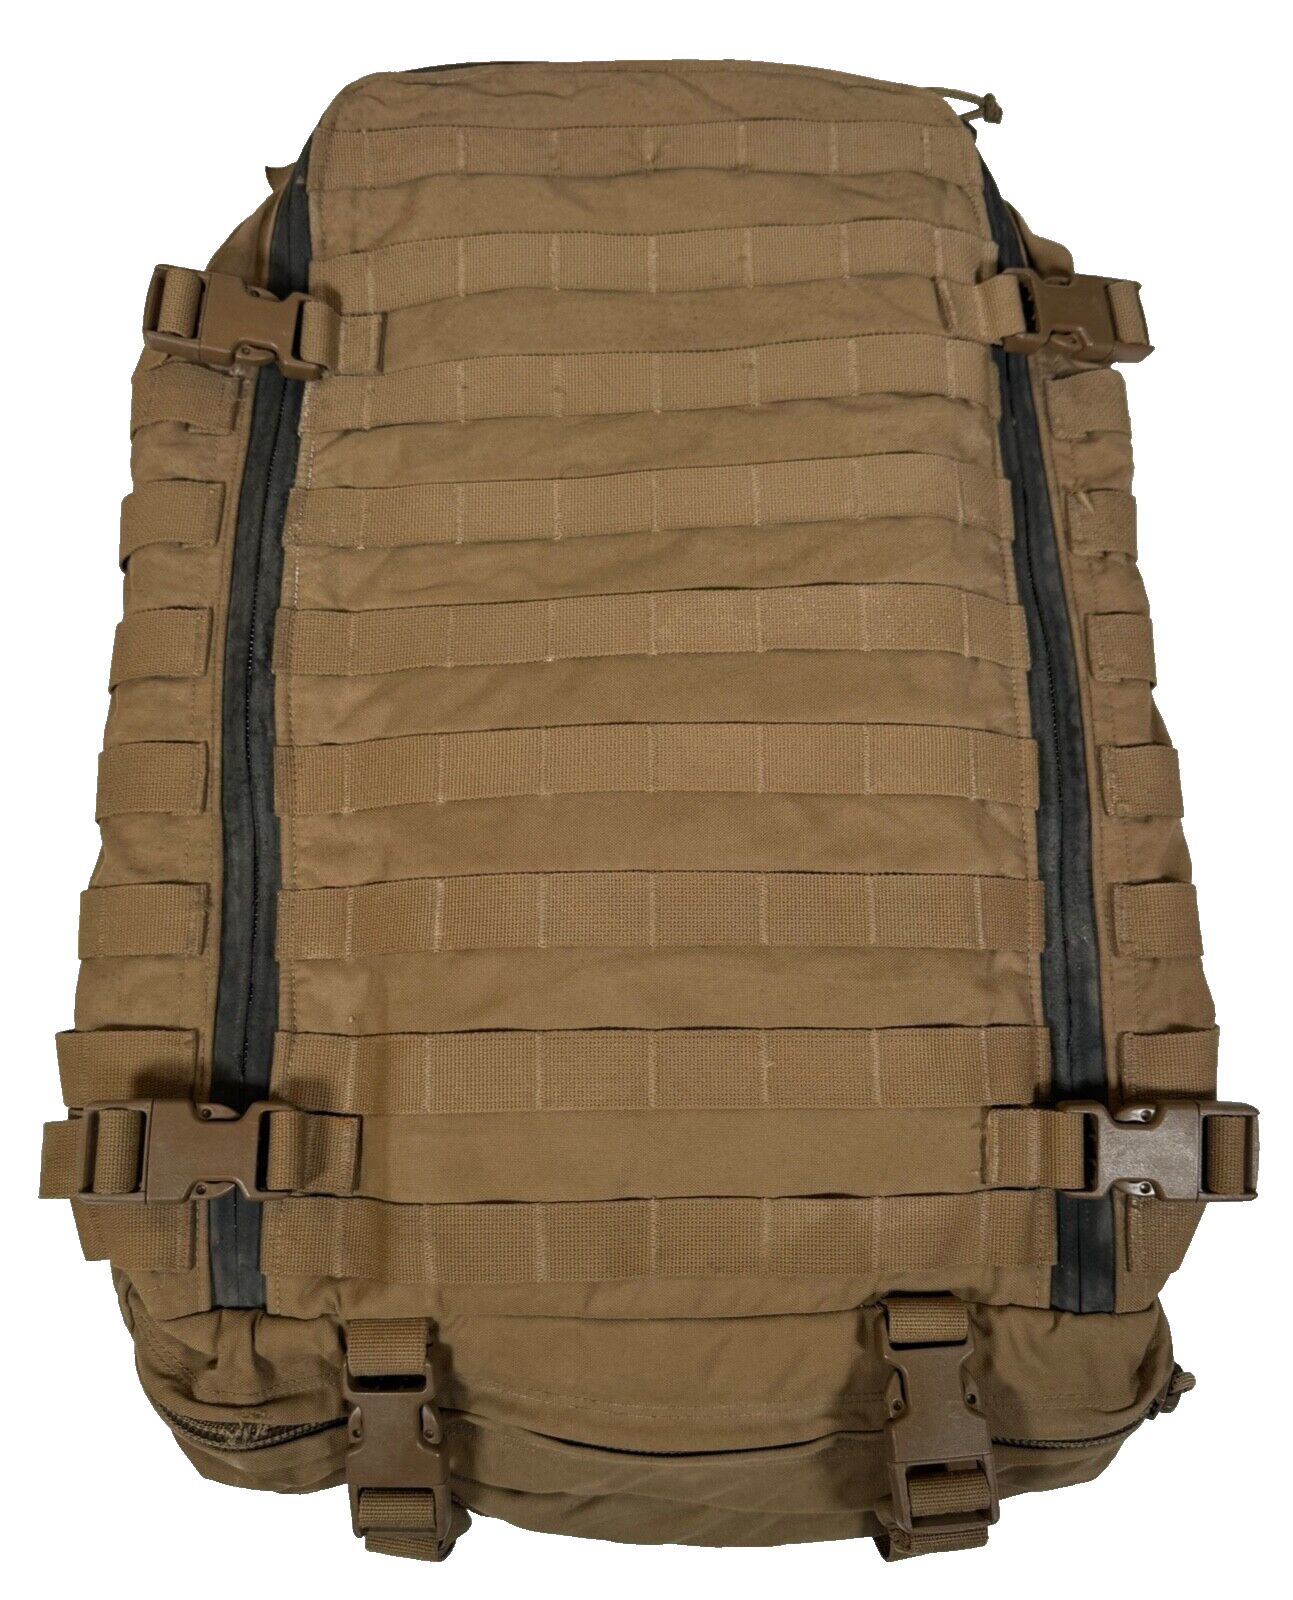 USMC Propper FILBE CAS Medical Medic Assault Pack Backpack Coyote Brown